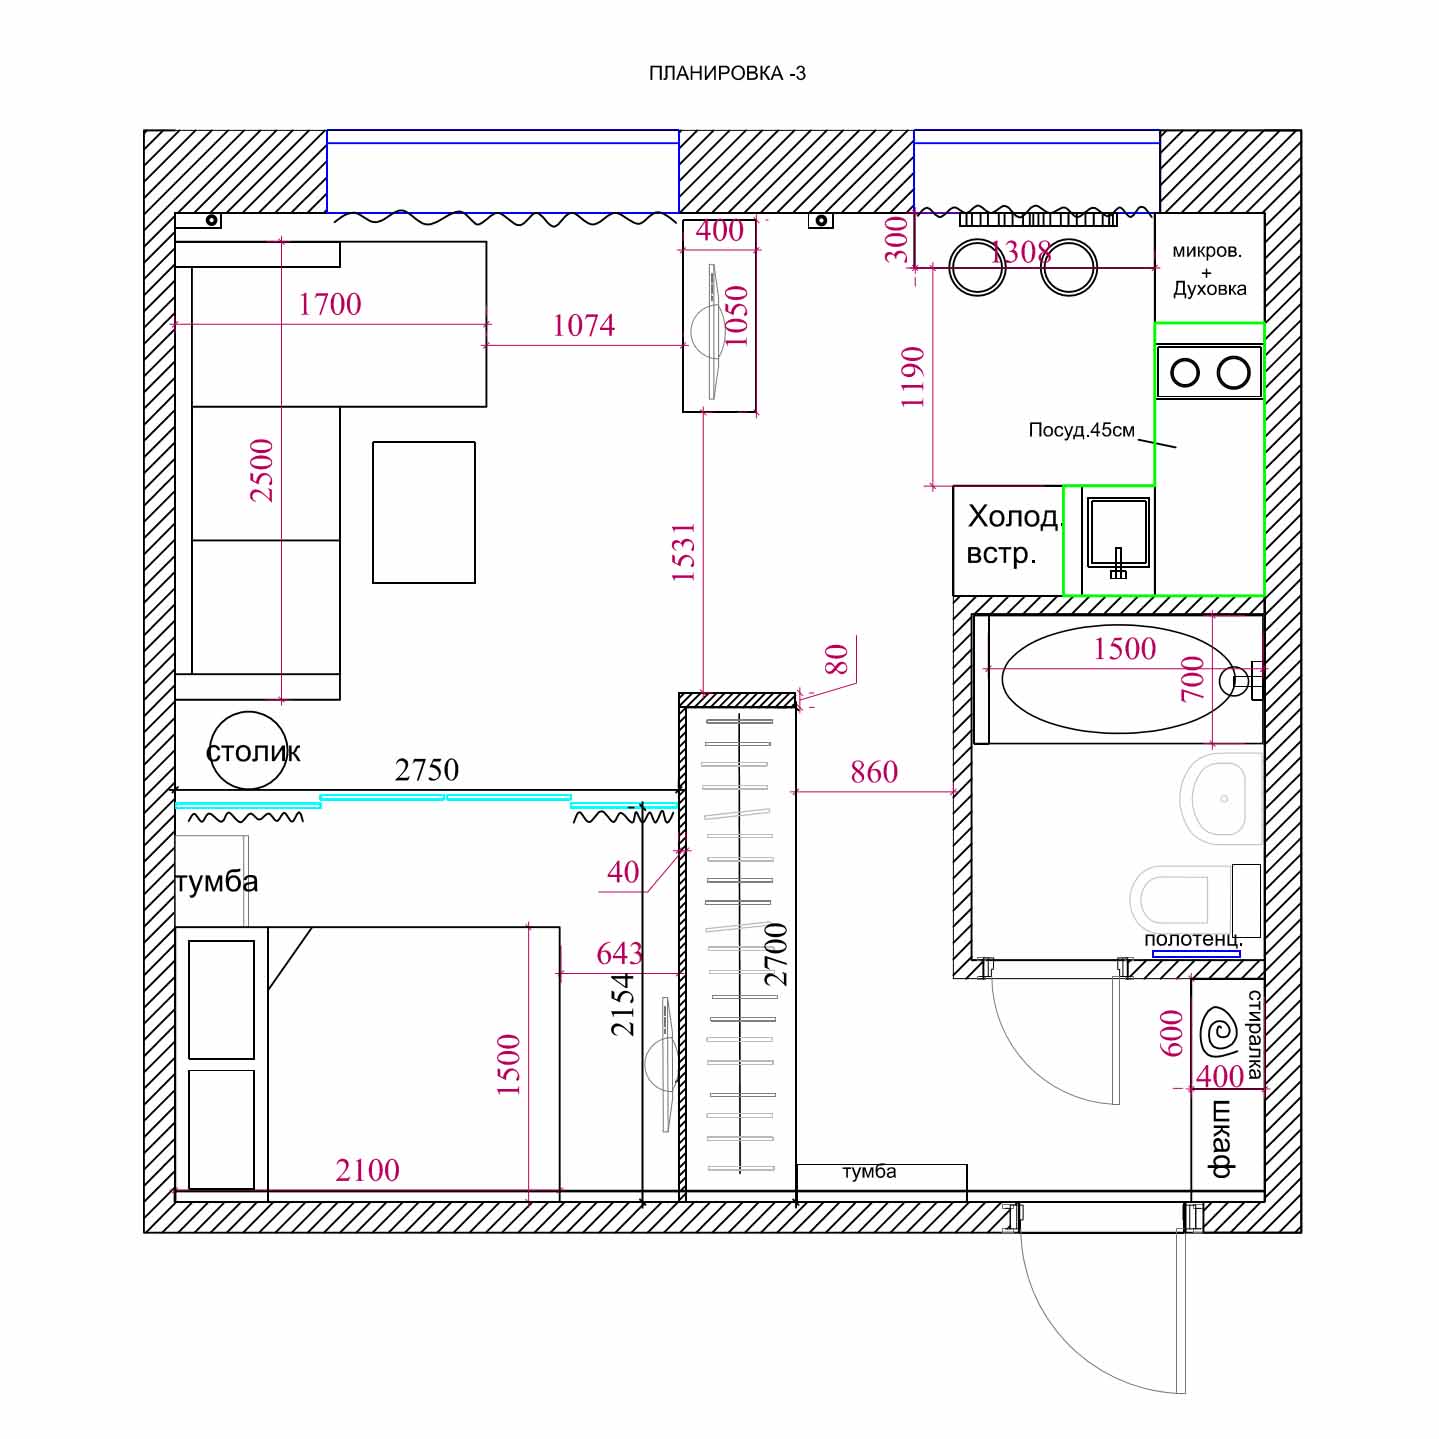 Оформление дизайна и планировка квартир типа распашонка